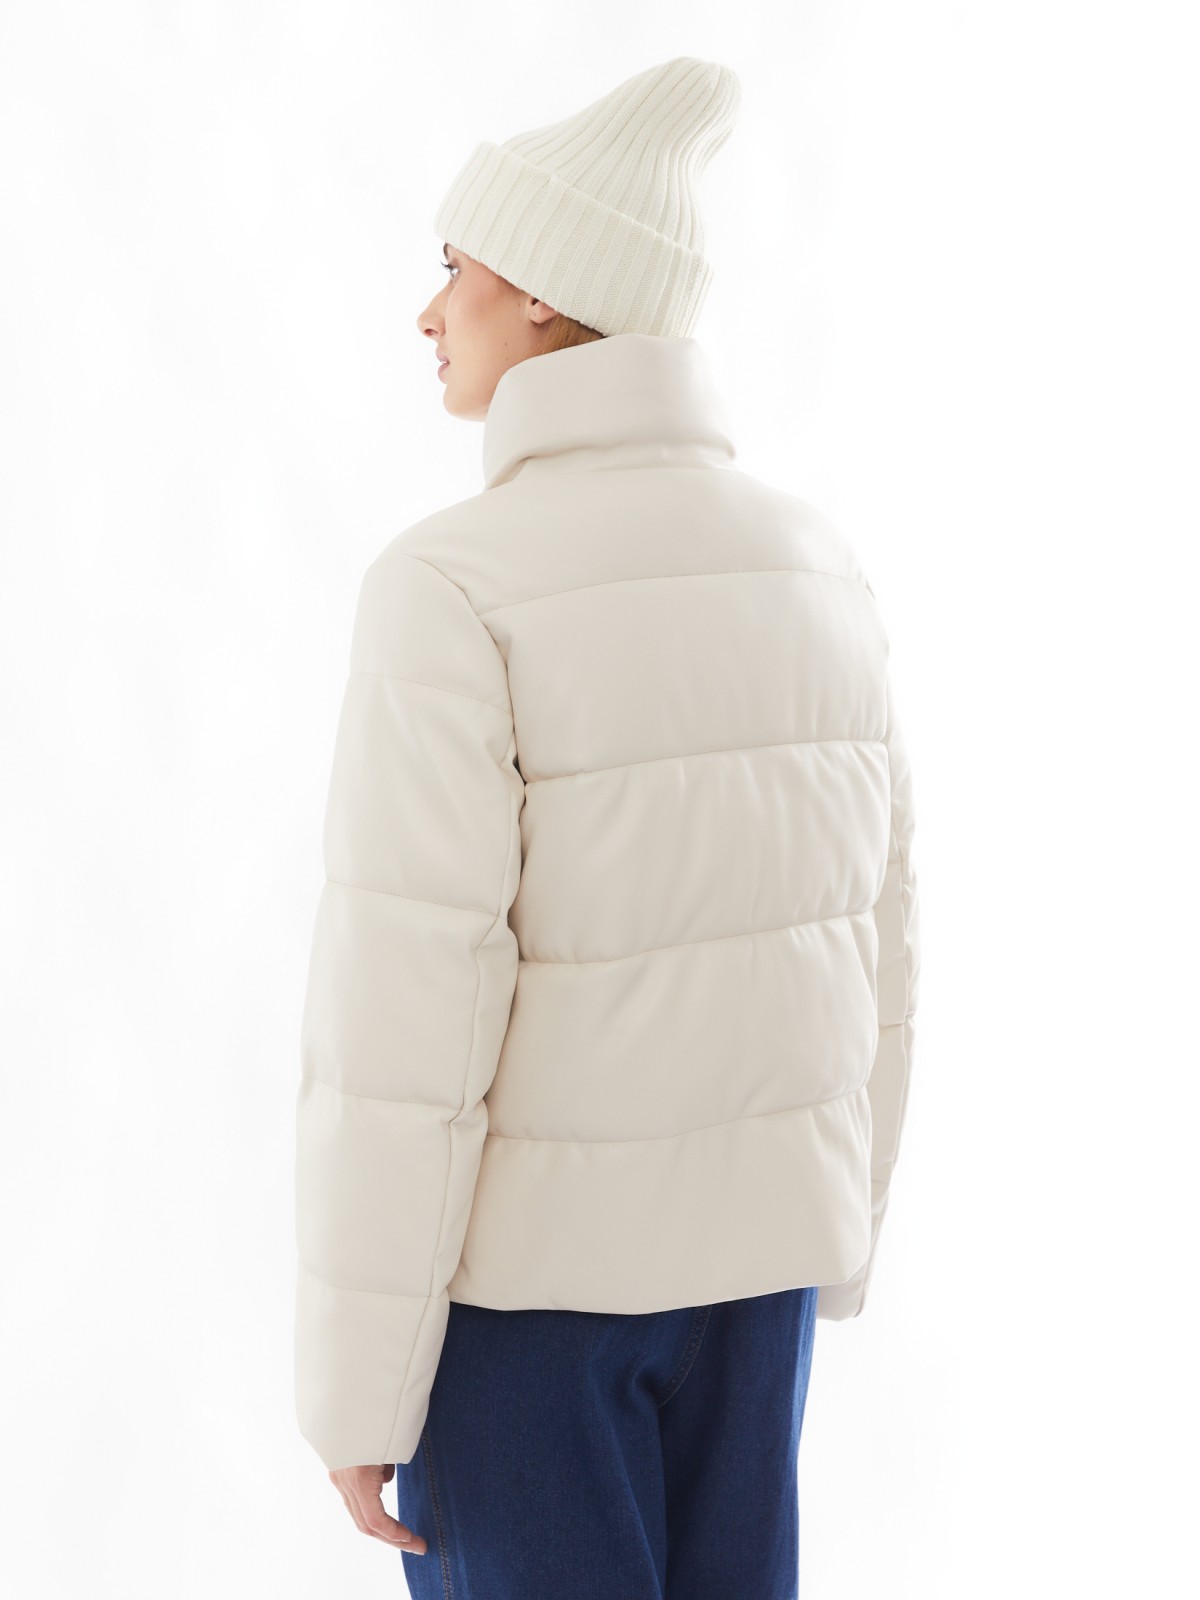 Тёплая стёганая дутая куртка из экокожи с высоким воротником zolla 02412516F044, цвет молоко, размер XS - фото 6